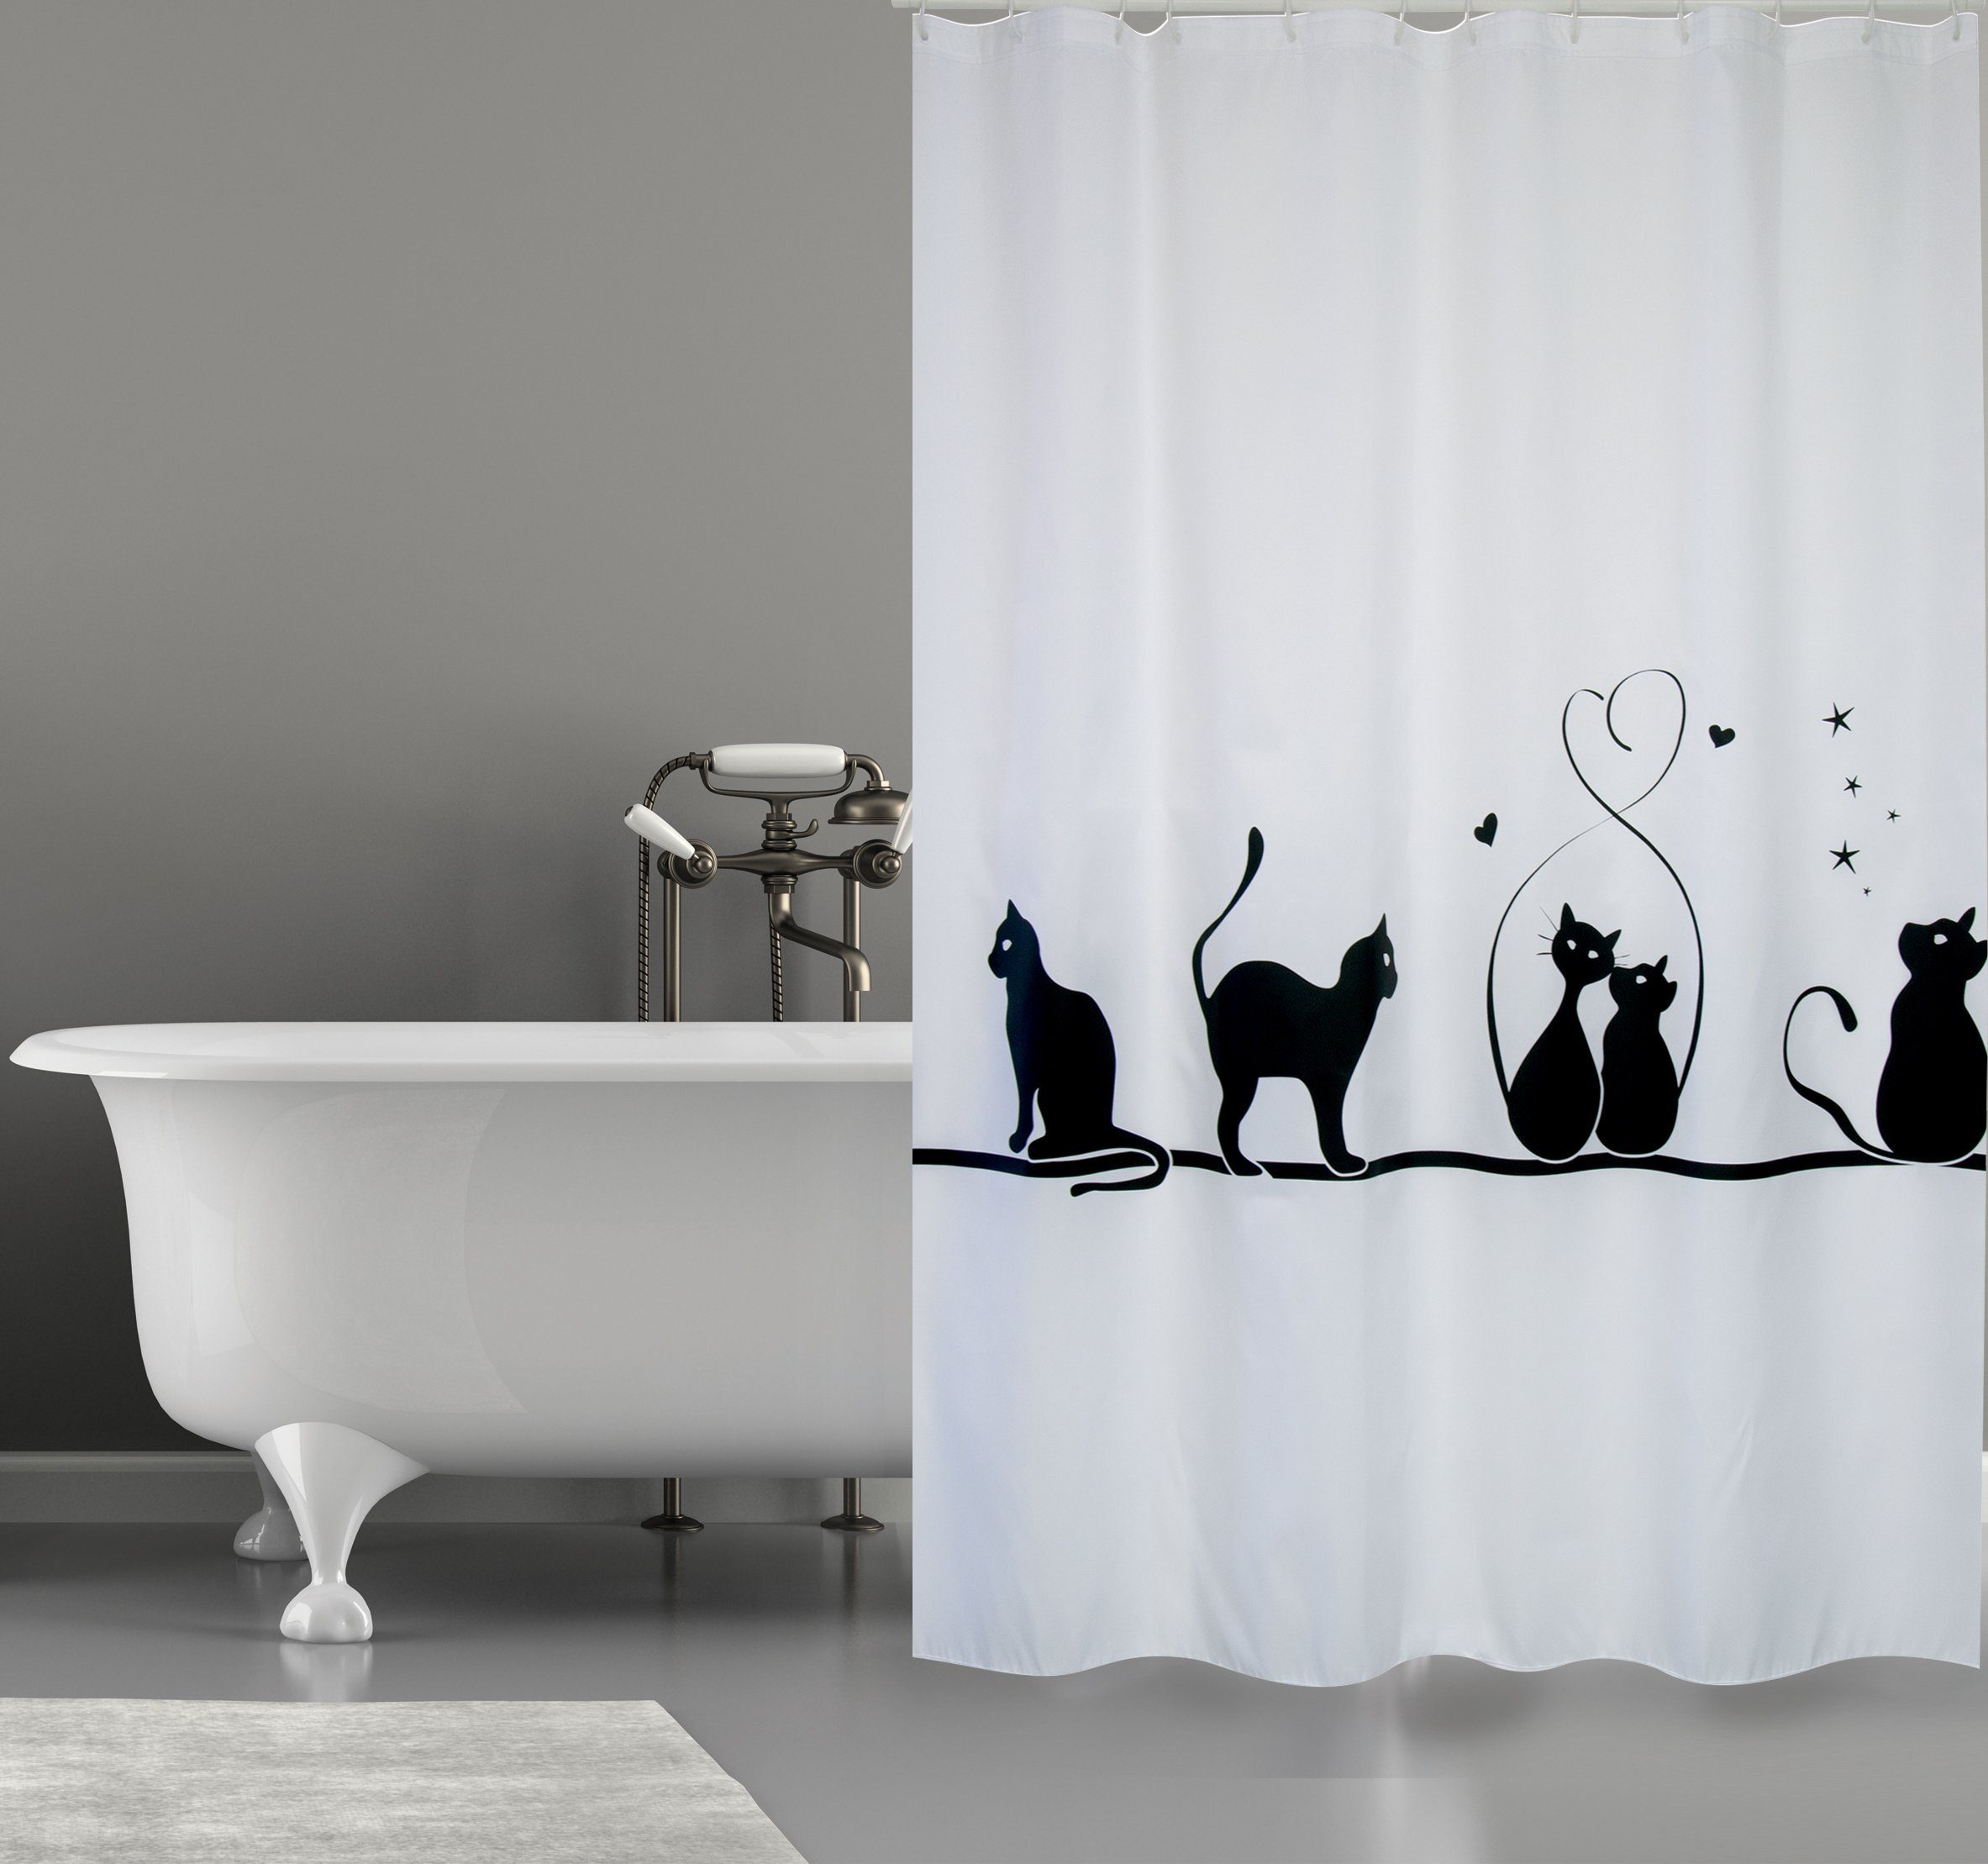 MSV Duschvorhang »CAT« Breite 180 cm, Premium Anti-Schimmel Textil- Duschvorhang, Polyester, 180x200 cm, waschbar, weiß-schwarz, Motiv "Cat"  online kaufen | OTTO